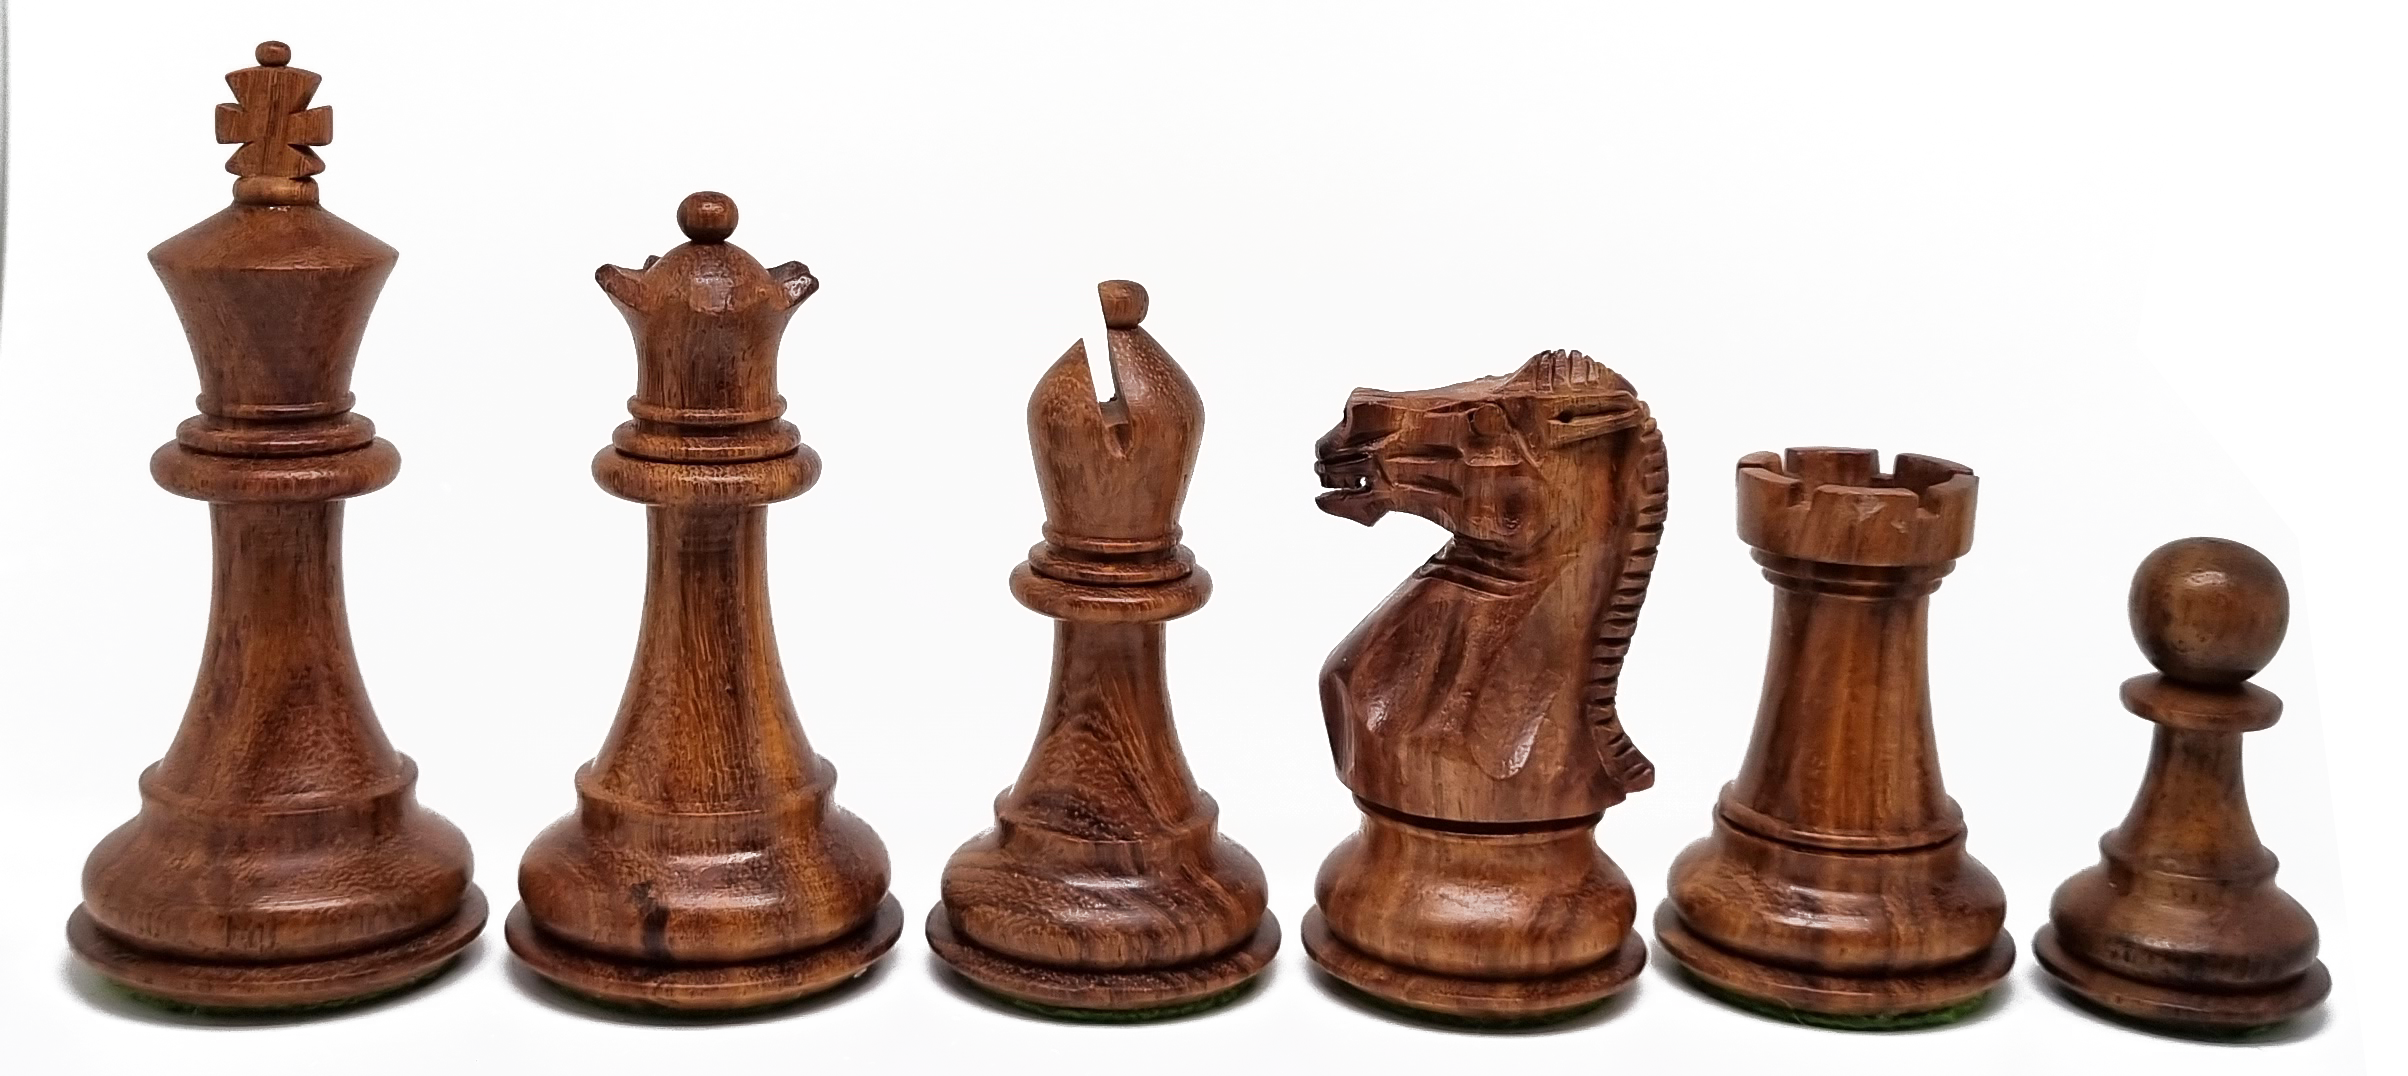 VI/ Piezas de ajedrez modelo Stallion "3,50" Shisham.